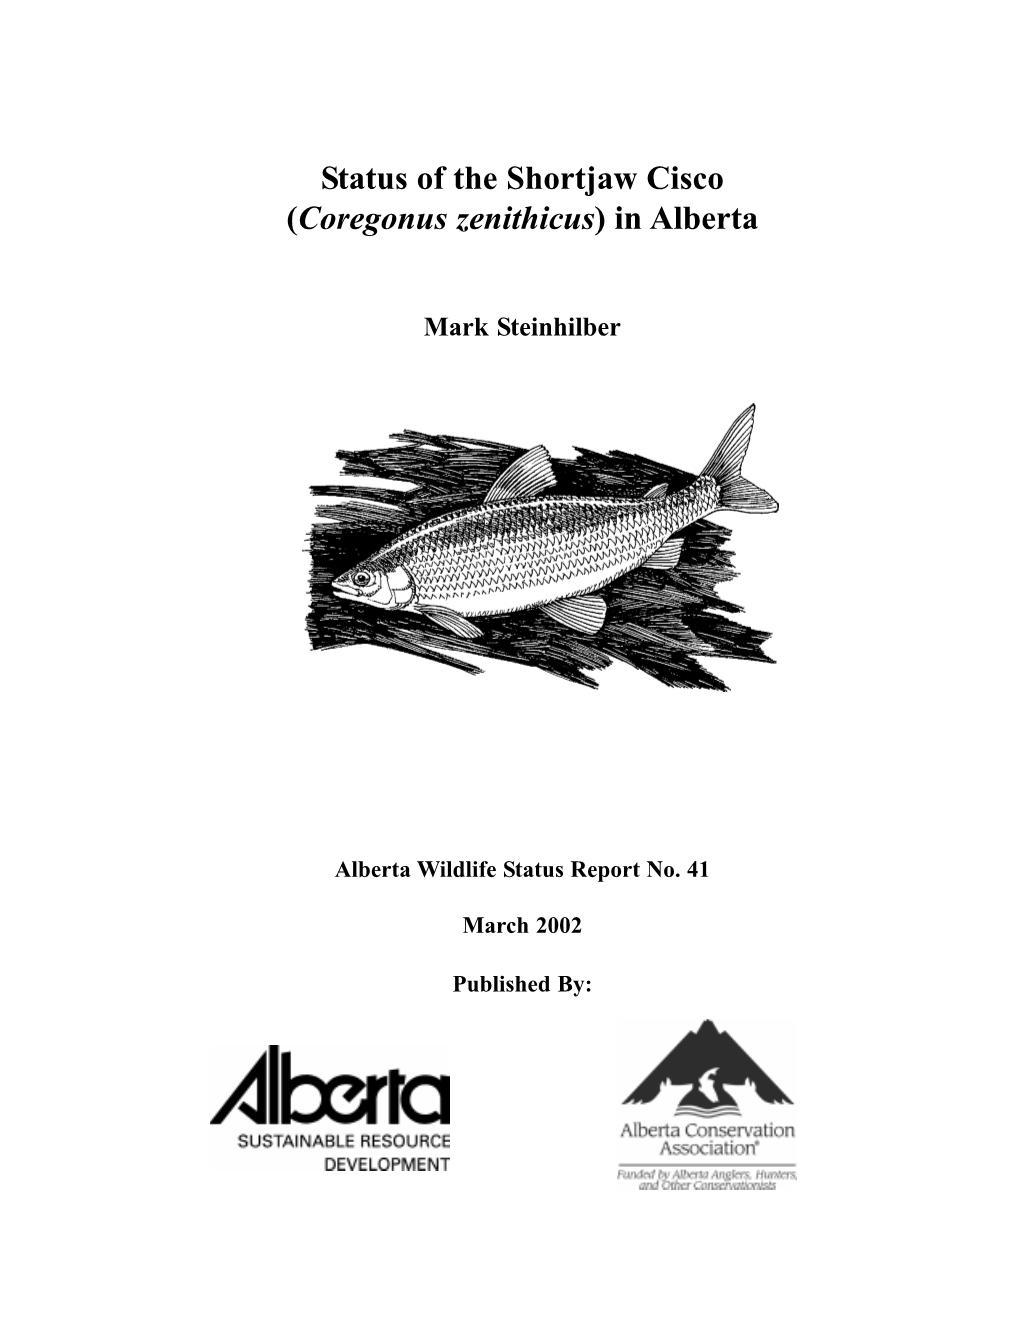 Status of the Shortjaw Cisco (Coregonus Zenithicus) in Alberta